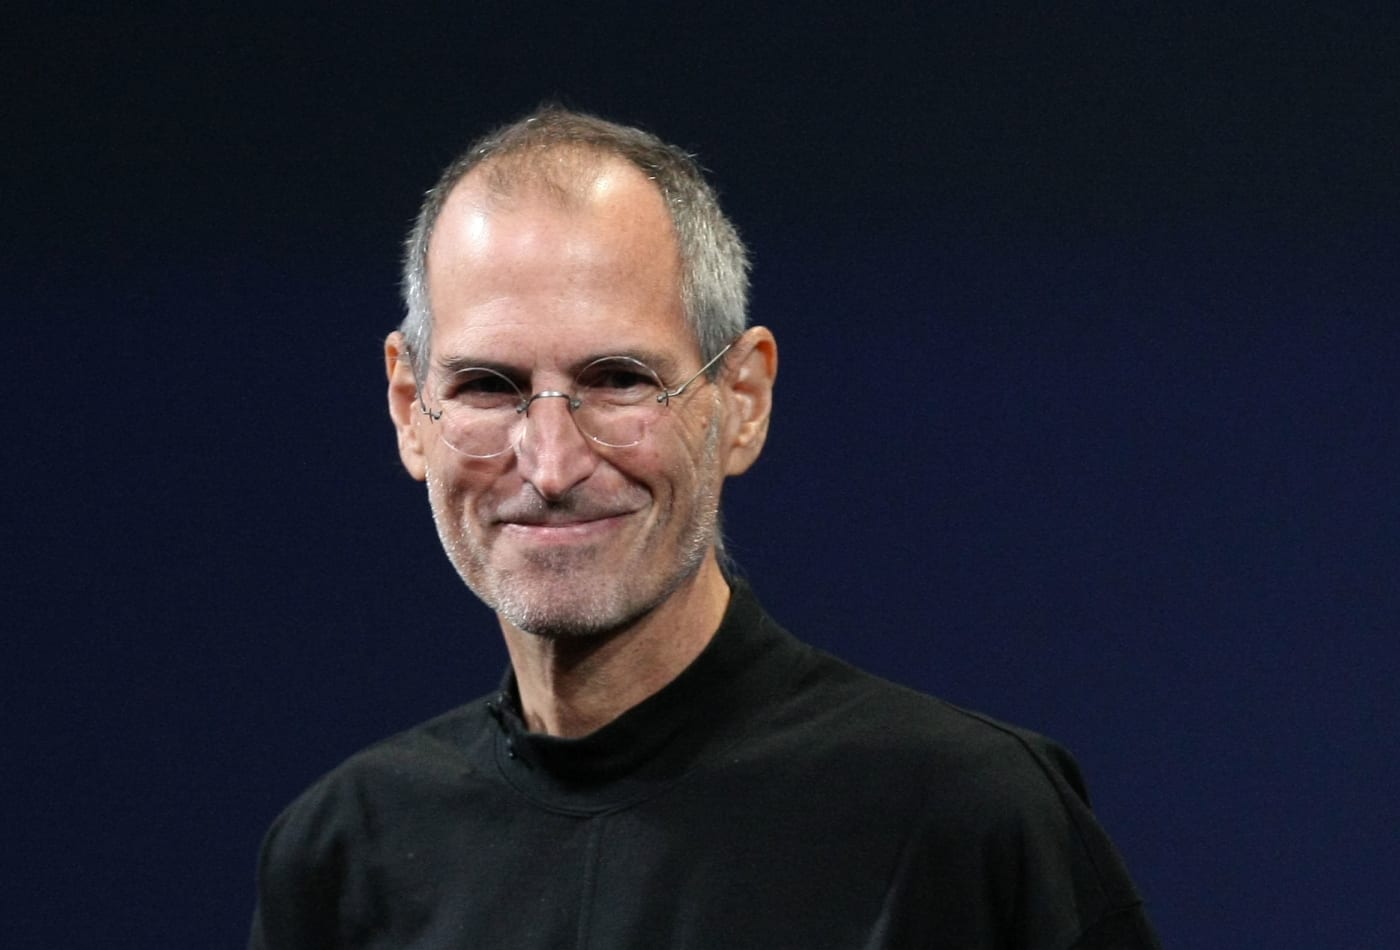 Steve Jobs success stories